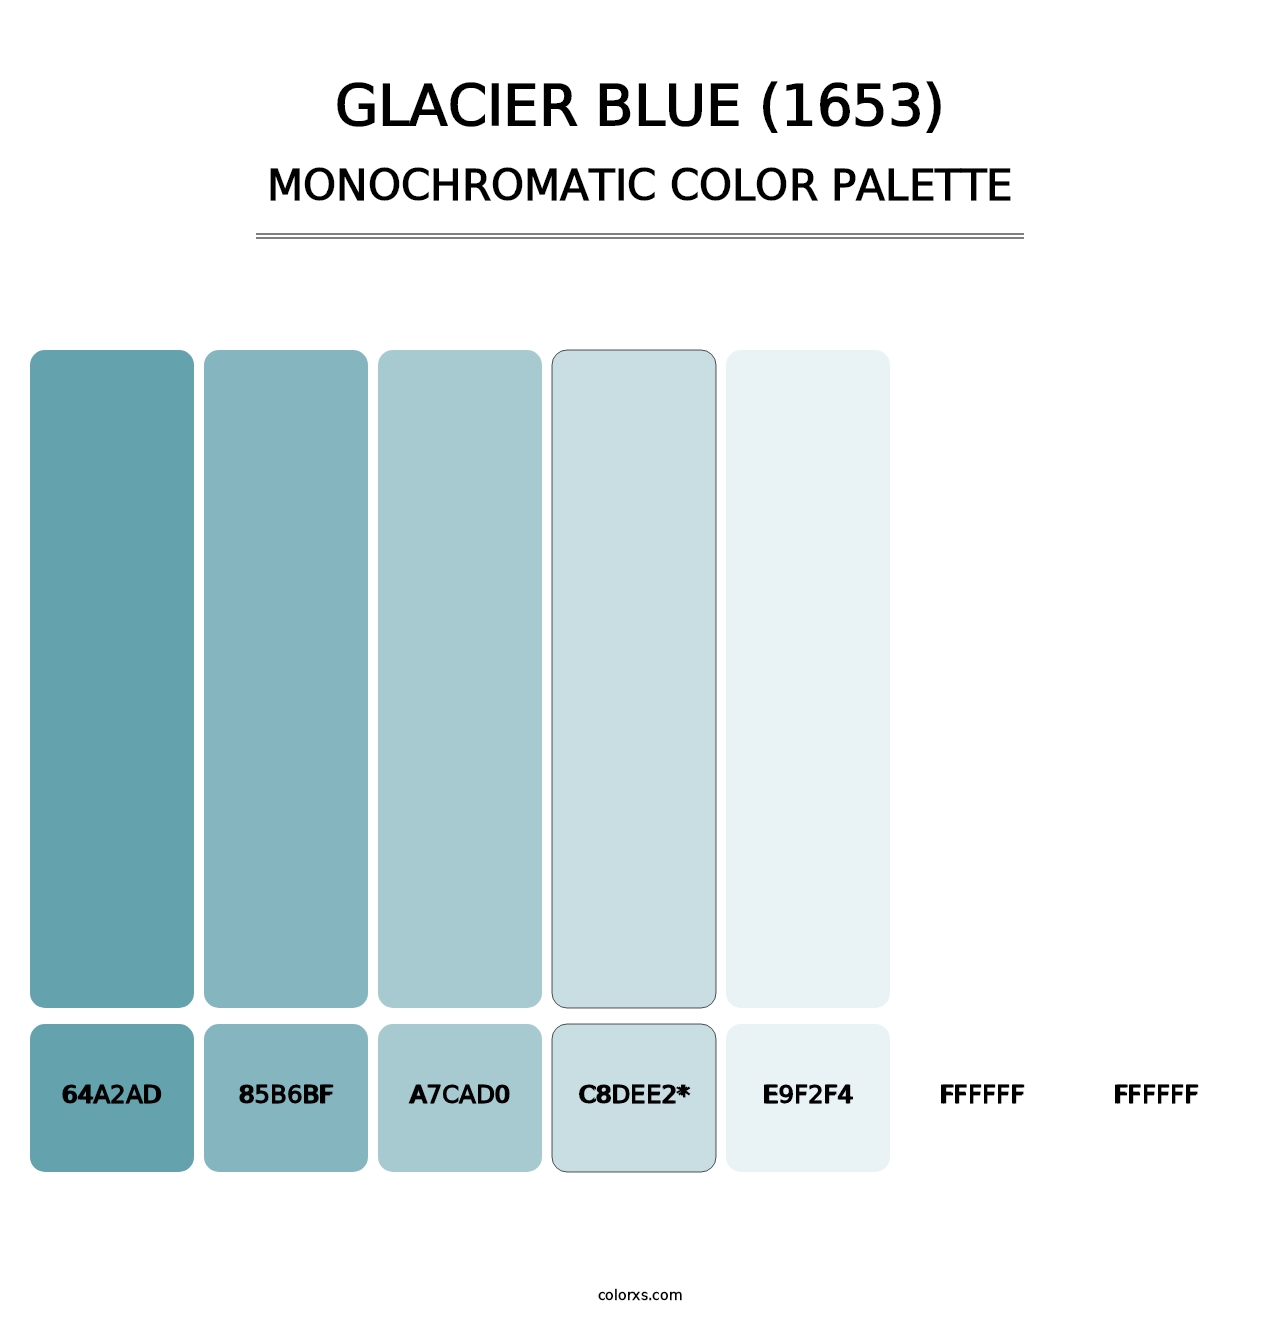 Glacier Blue (1653) - Monochromatic Color Palette